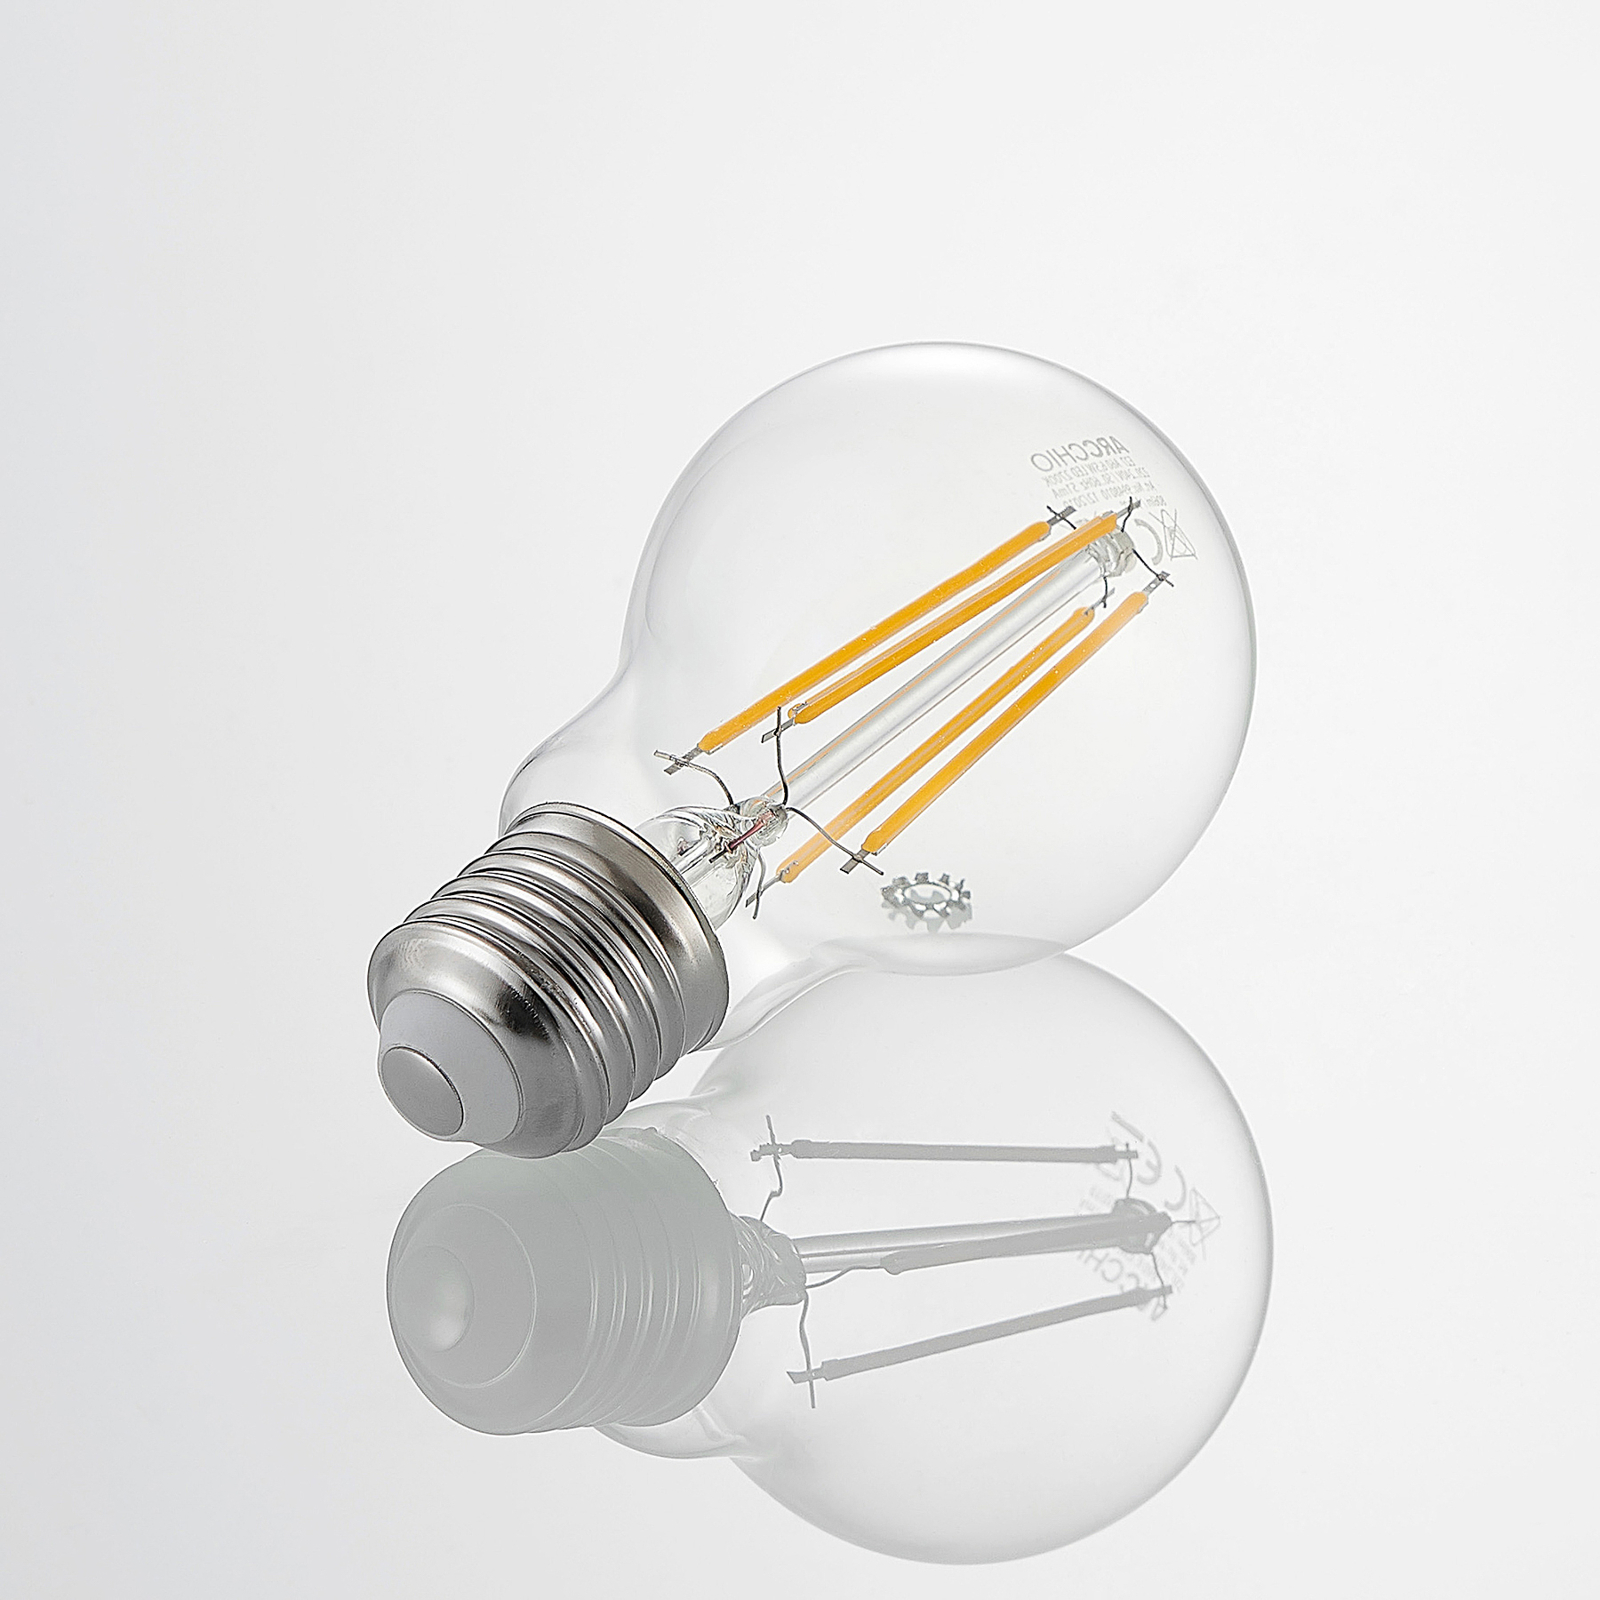 LED bulb E27 A60 6.5 W 827 3-level dimmer 2-pack